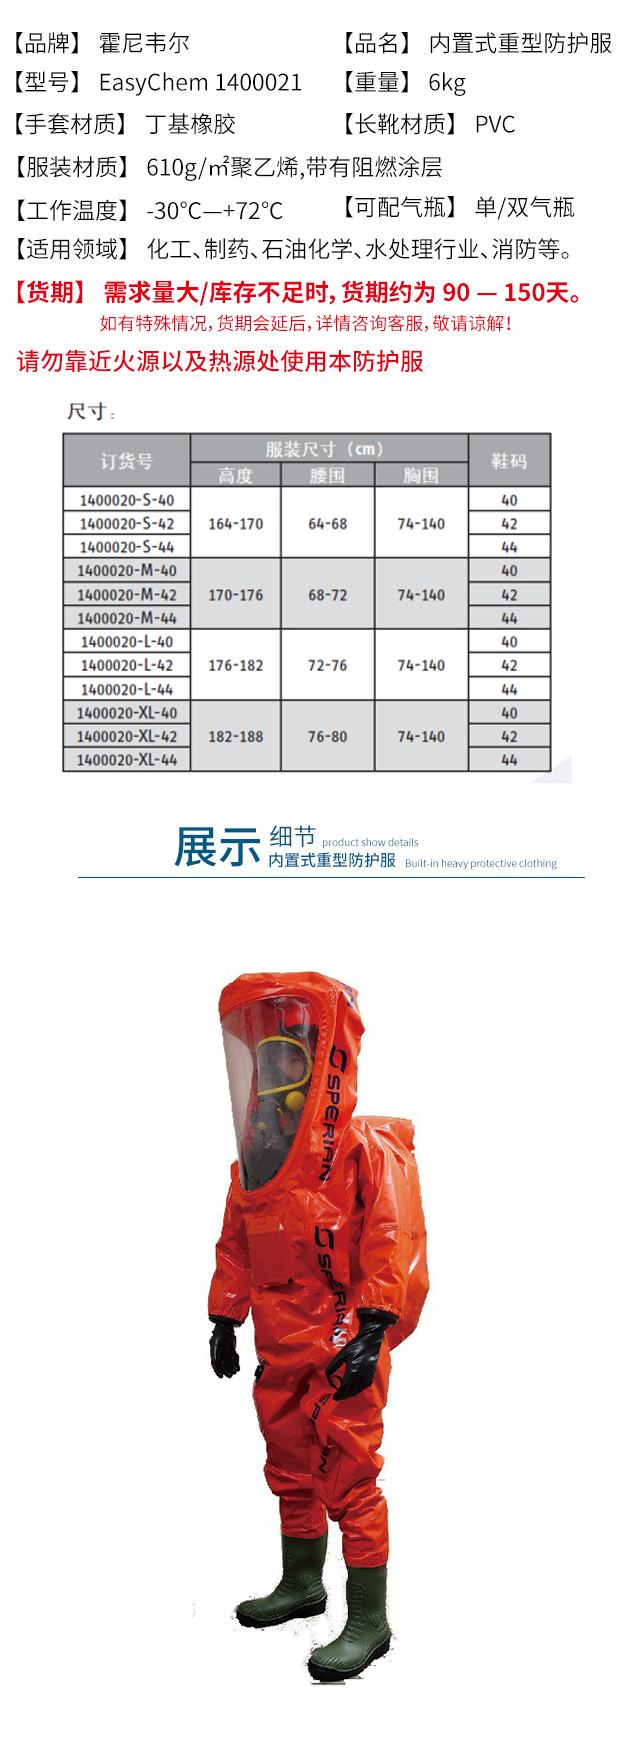 霍尼韦尔1400021-L-44 EasyChem 内置式重型防化服